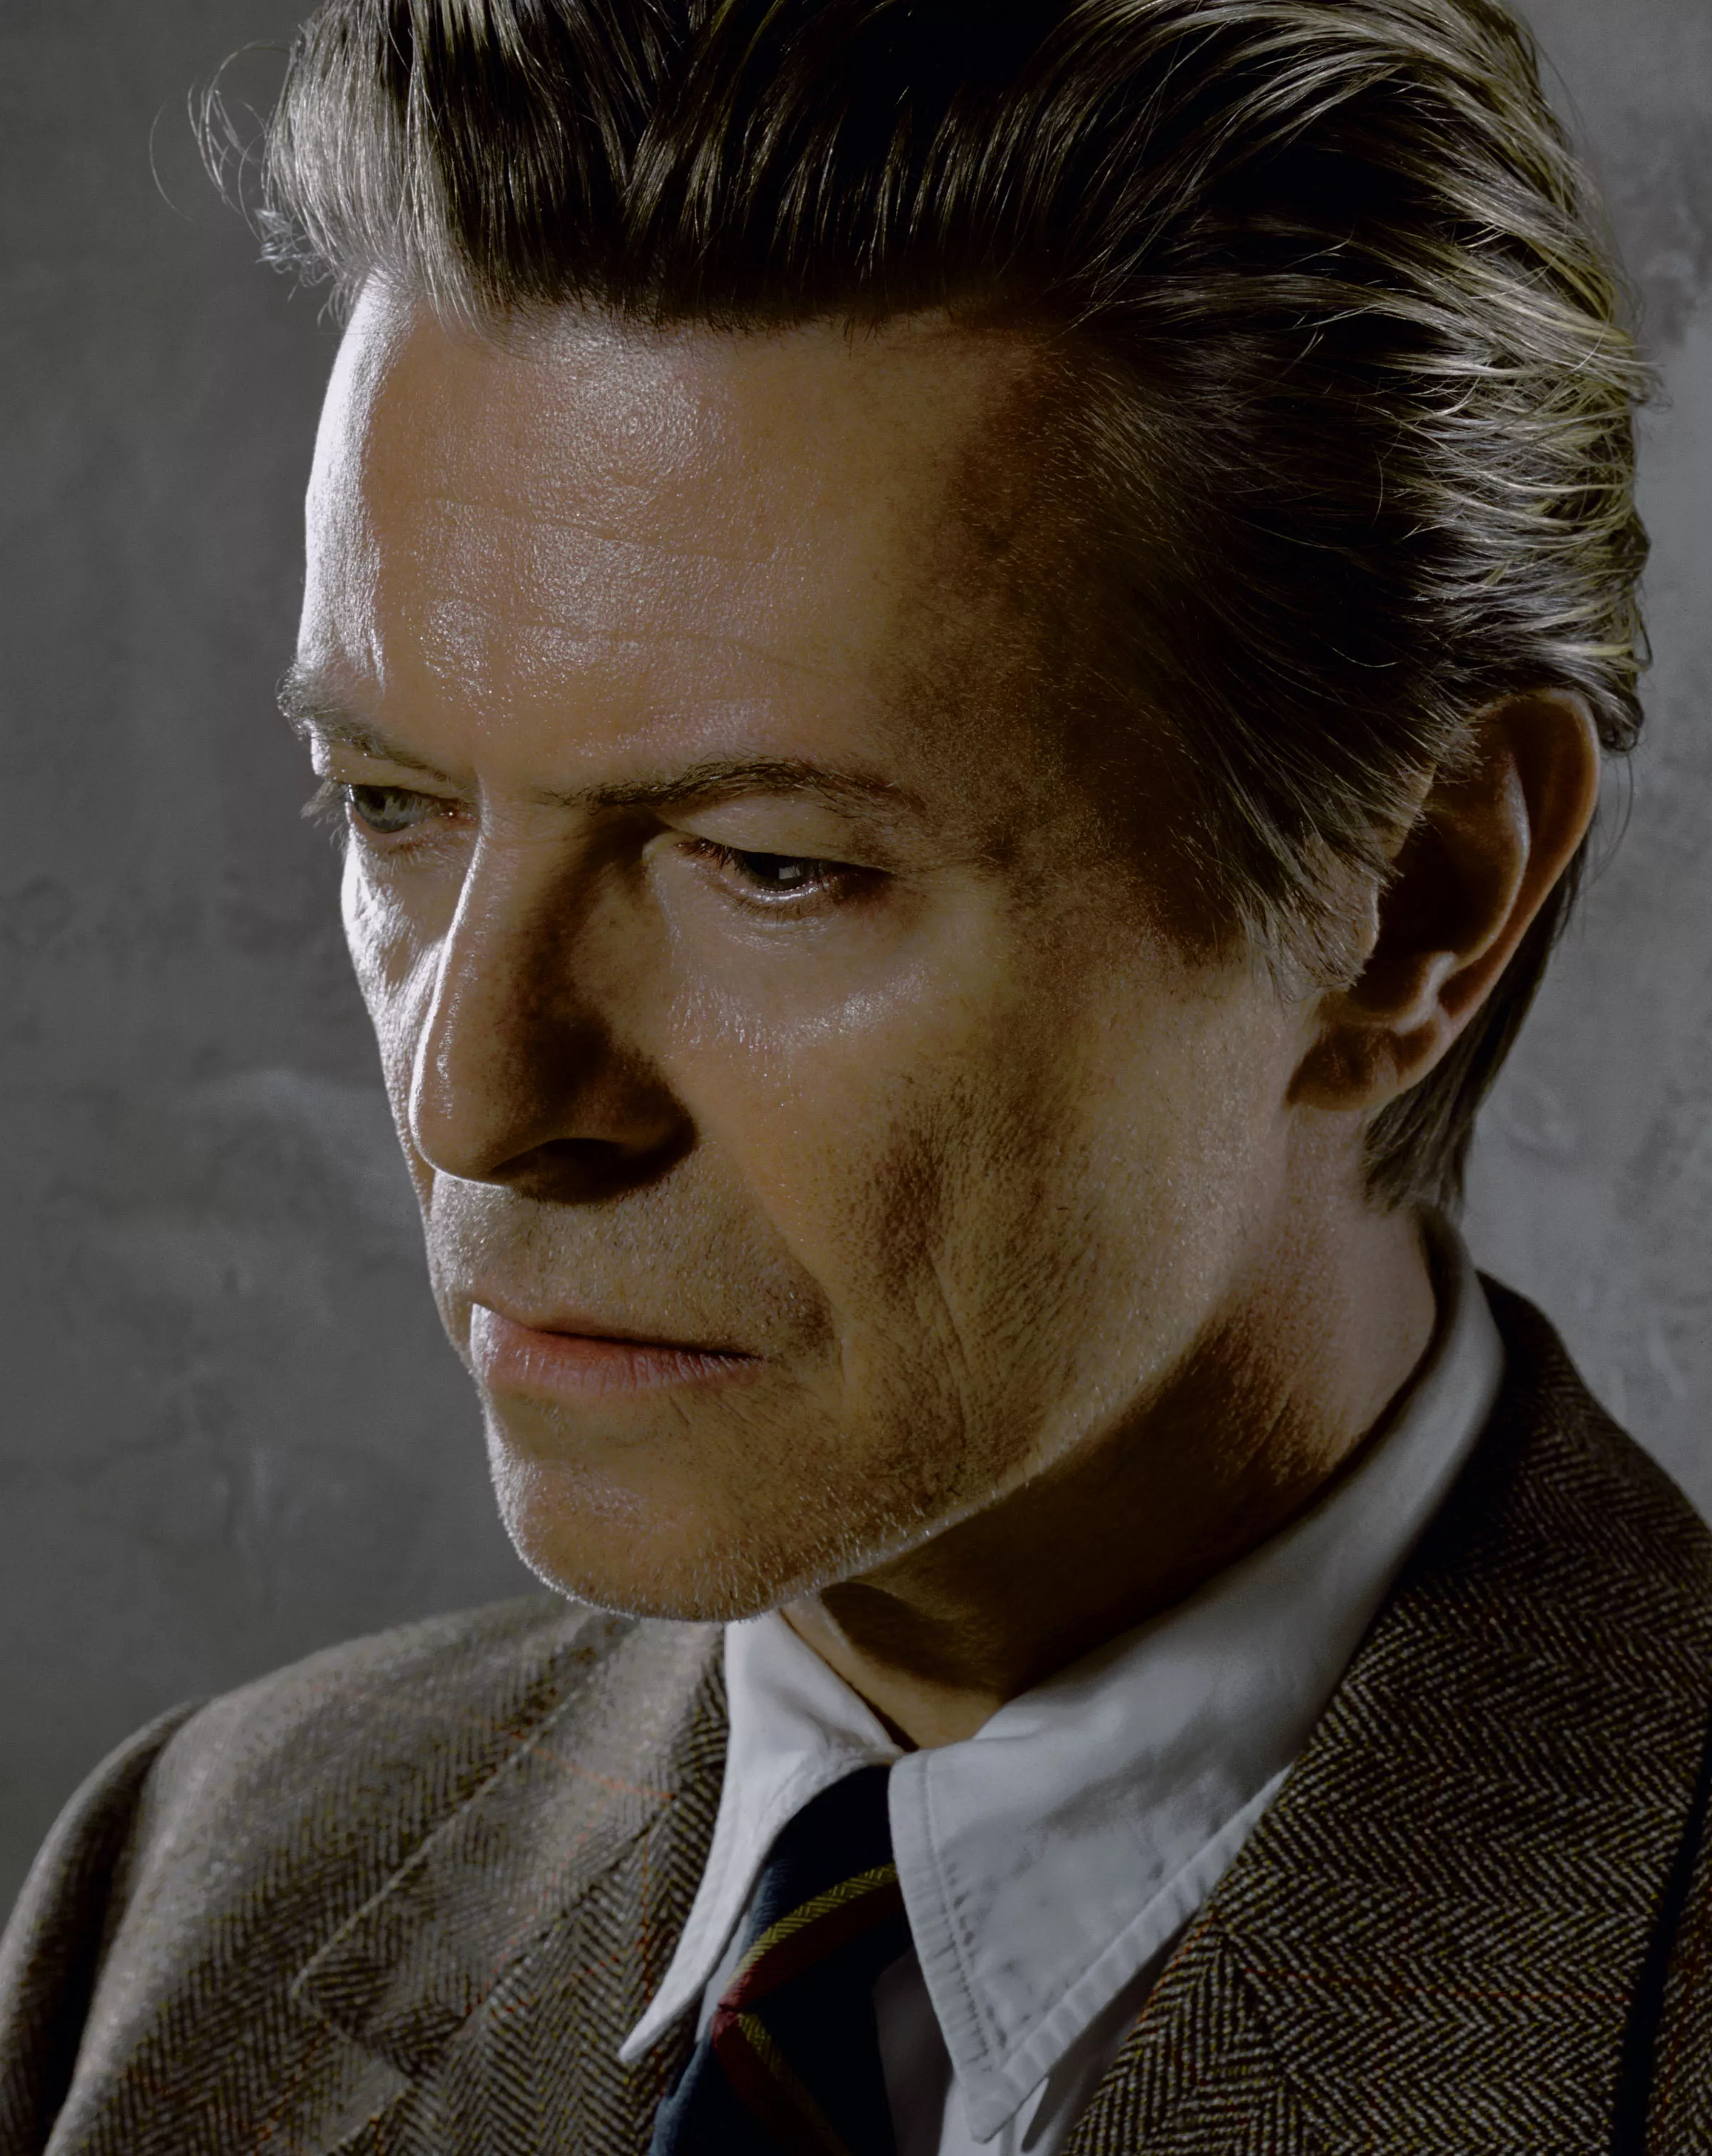 David Bowie udgiver nyt skørt album til januar